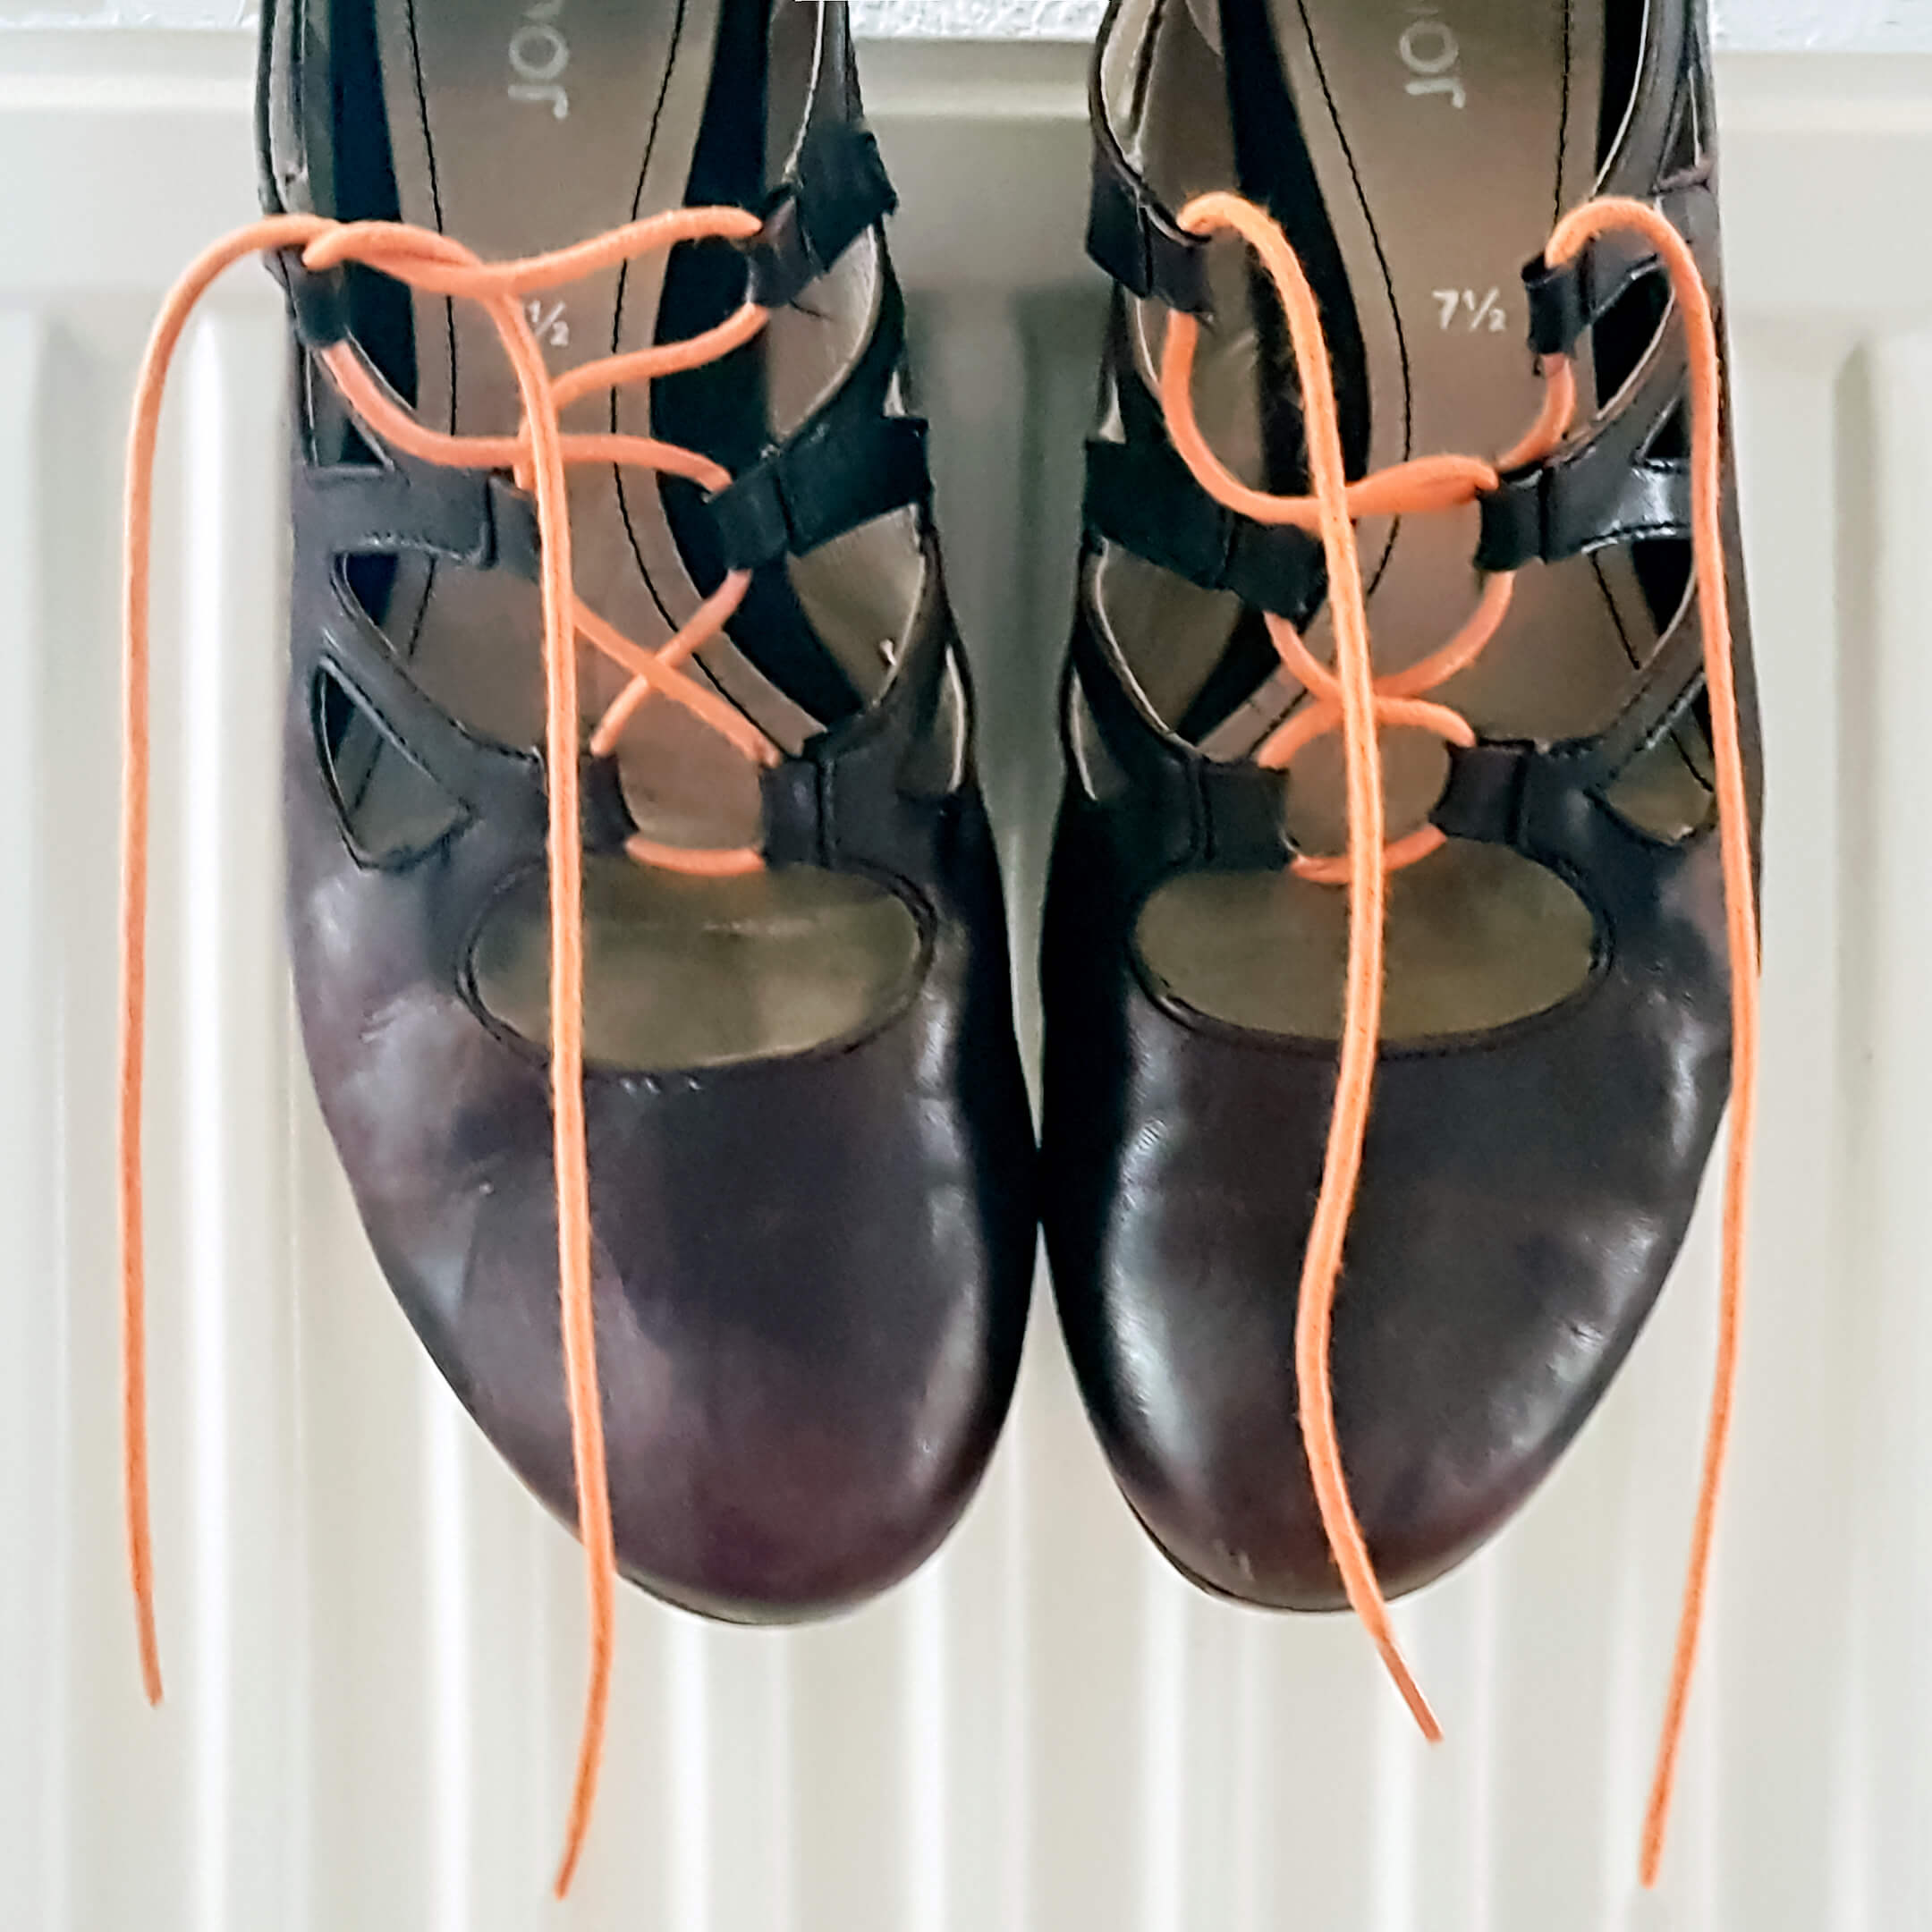 Foto van paarsige schoenen met oranje veters op een verwarming bij het gedicht "Oranje 3".